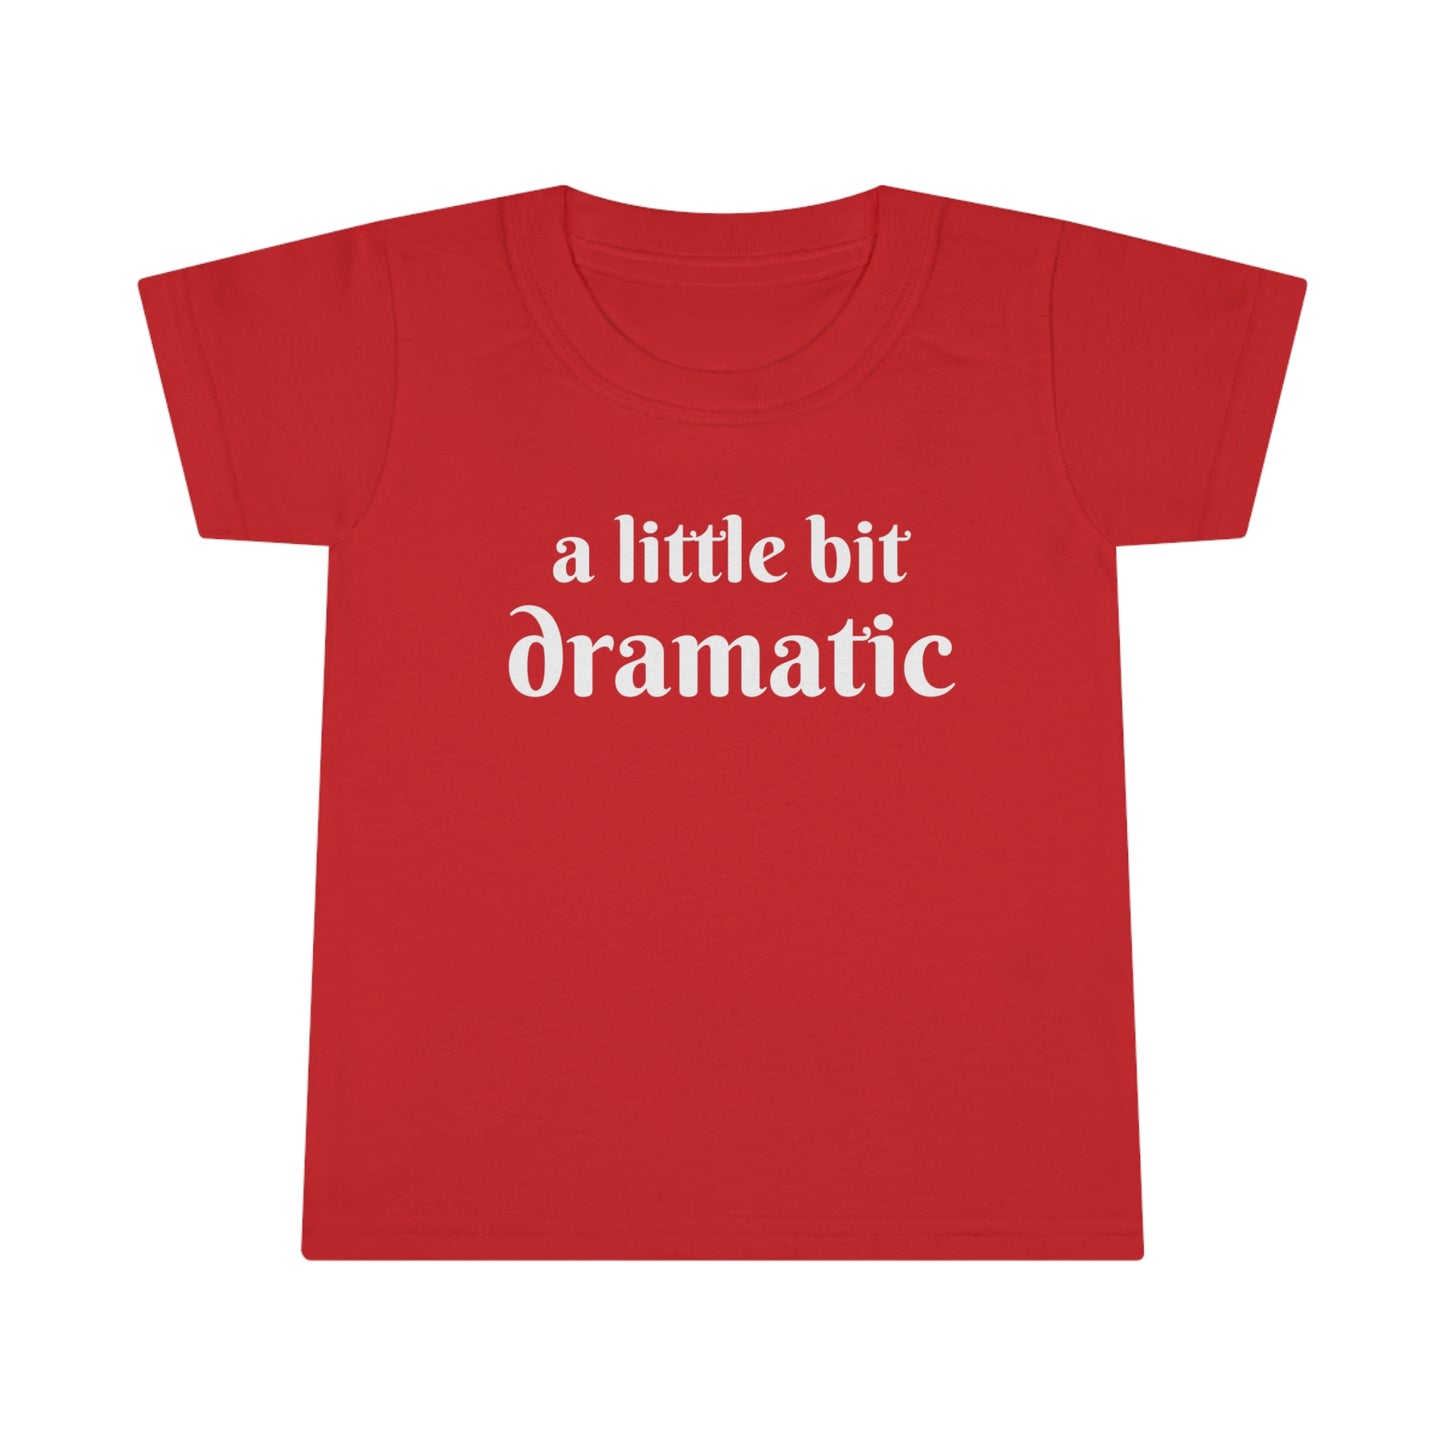 A Little Bit Dramatic! Toddler T-Shirt